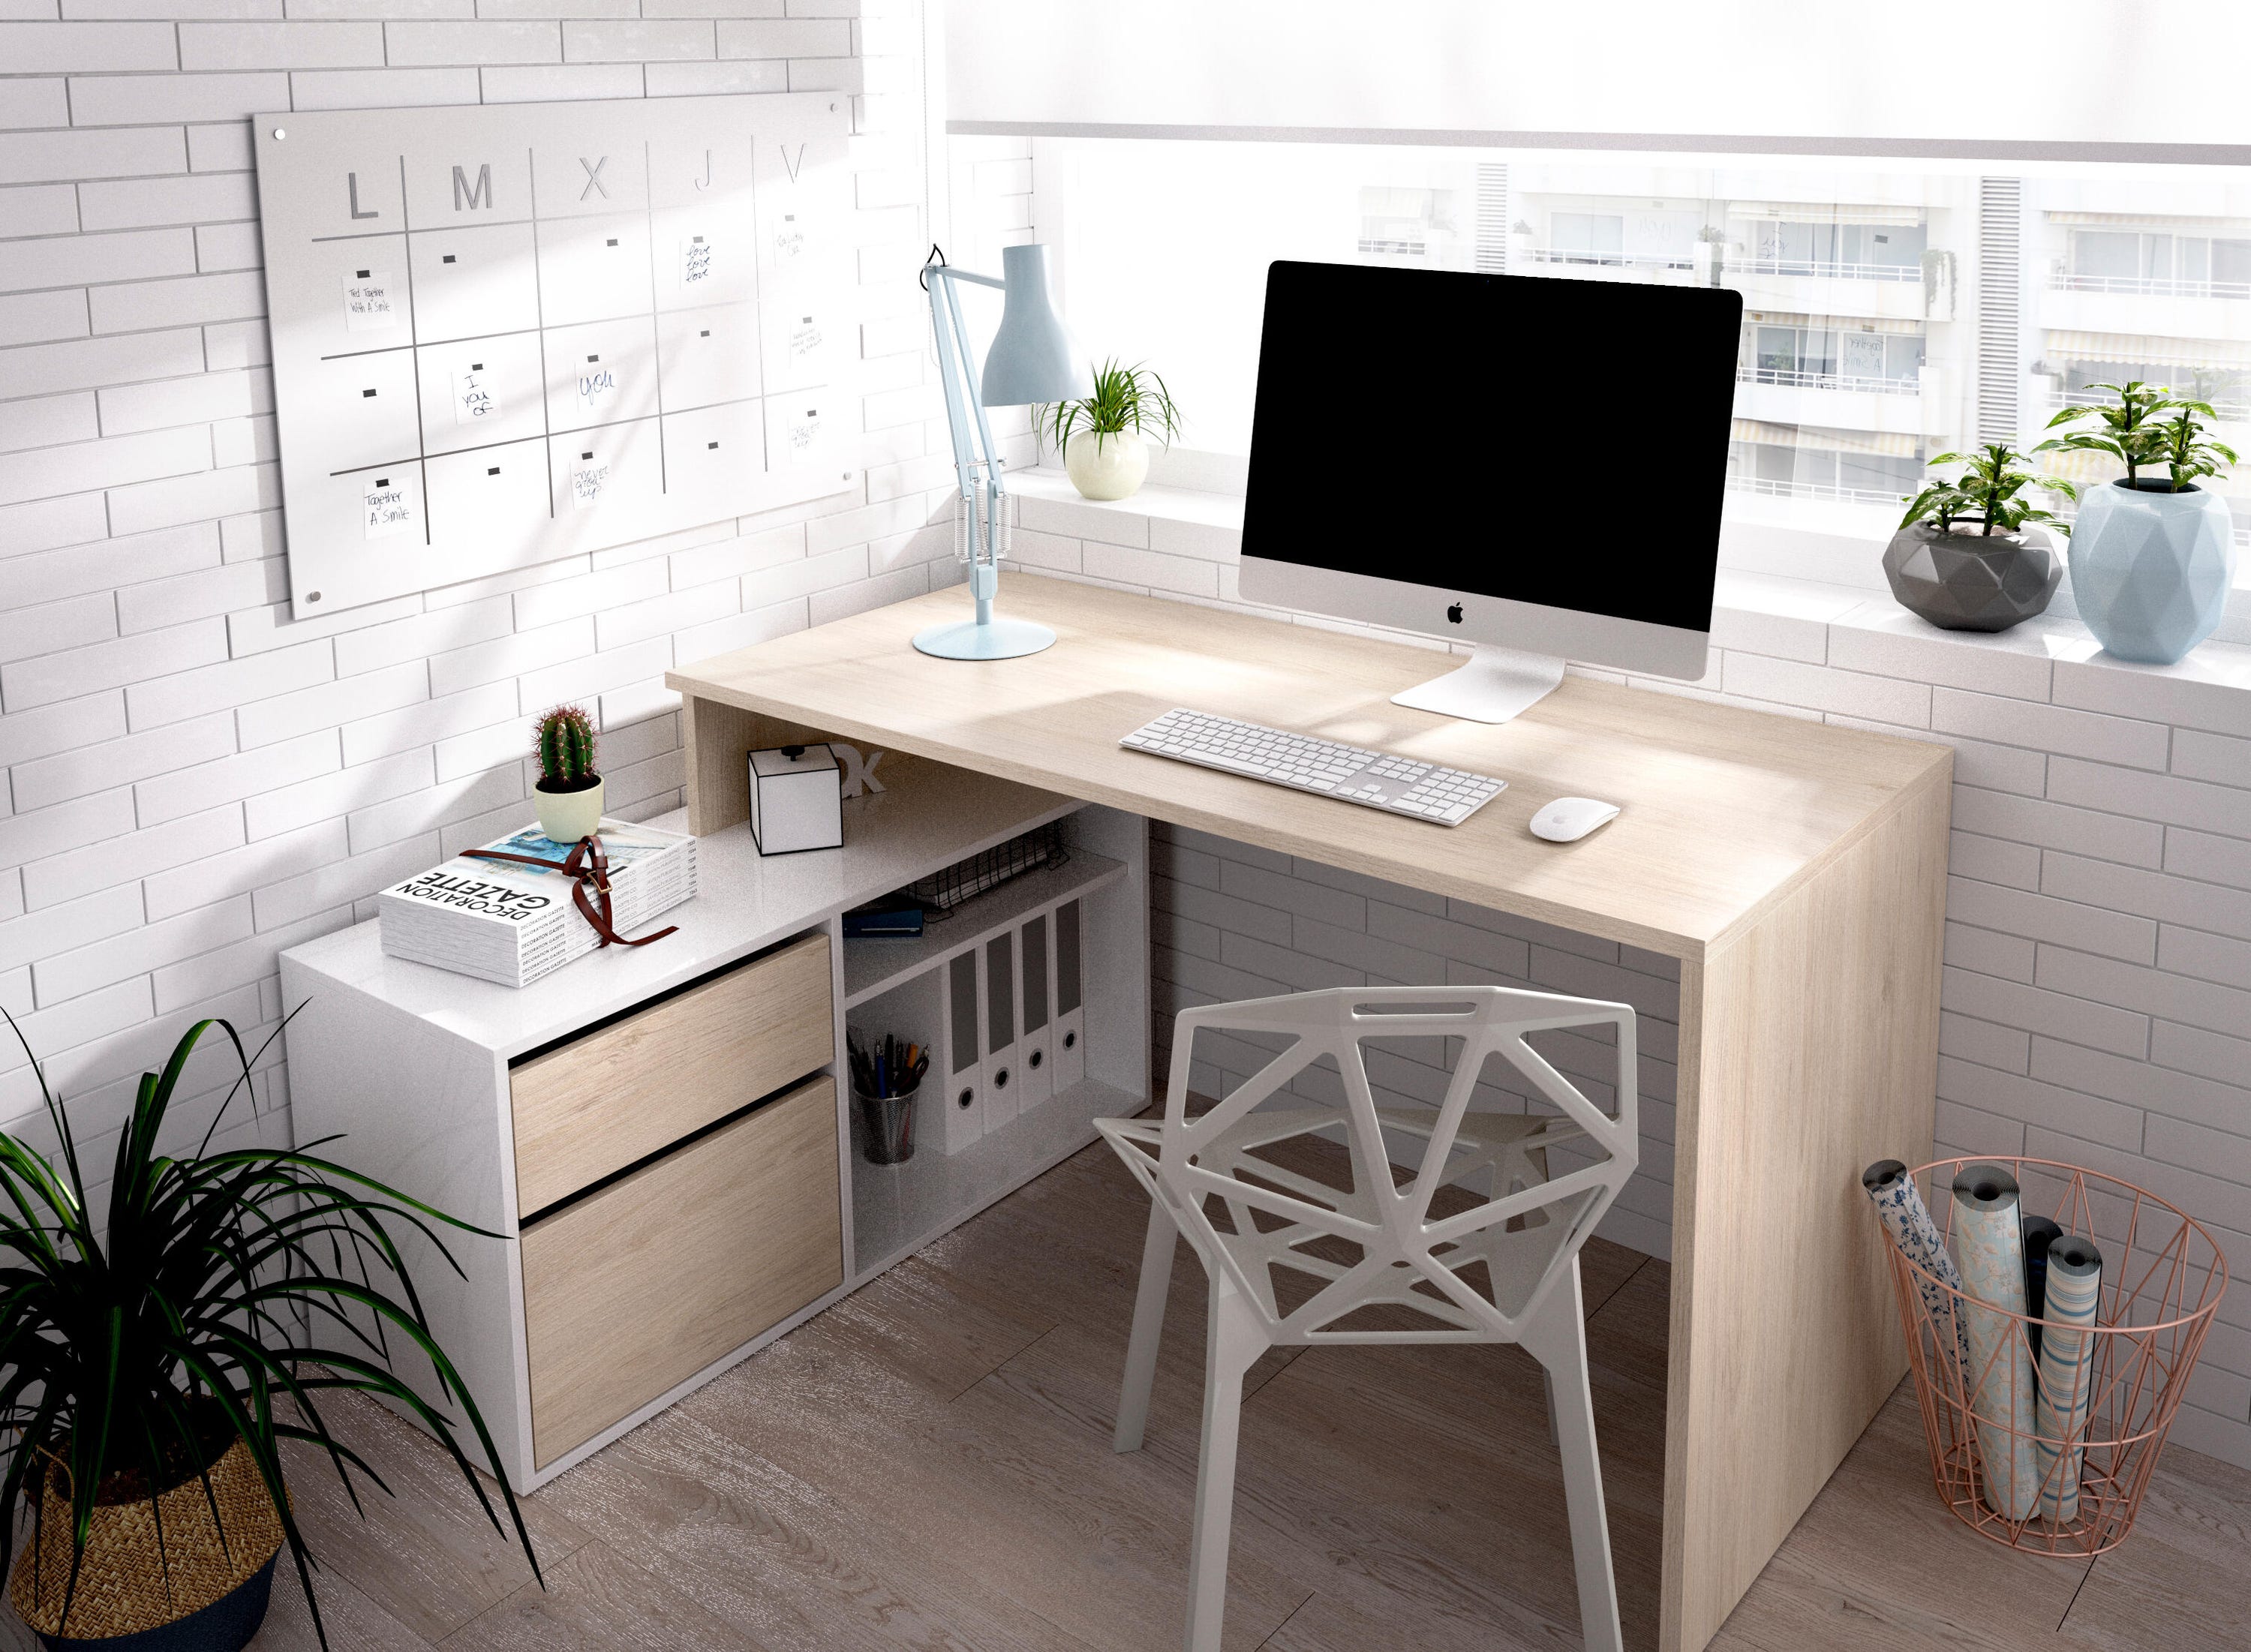 Mesa escritorio Skat blanco y roble 139x93x75 cm